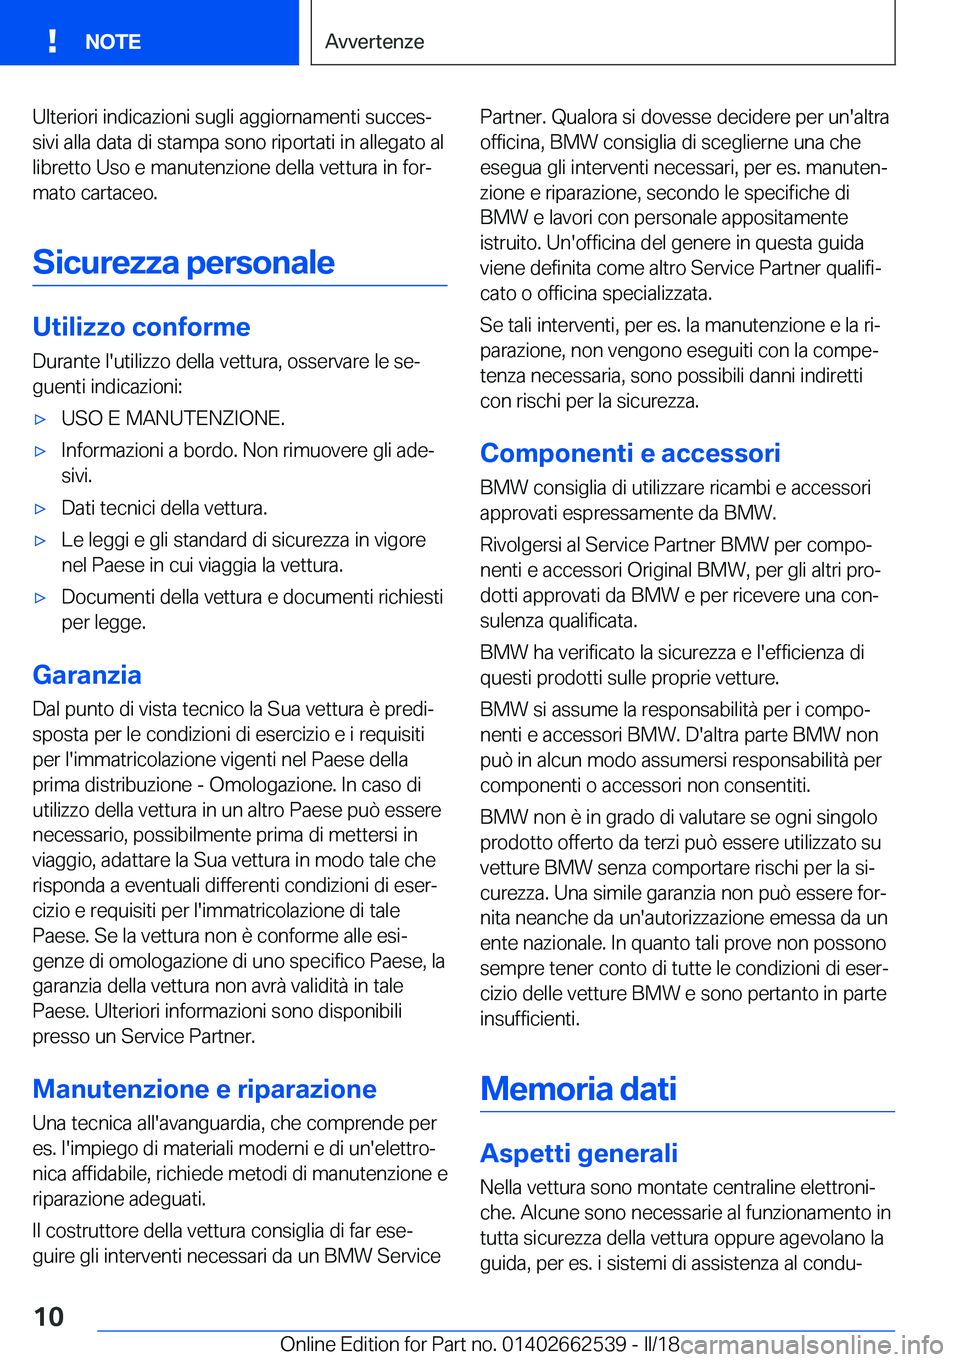 BMW X5 M 2018  Libretti Di Uso E manutenzione (in Italian) �U�l�t�e�r�i�o�r�i� �i�n�d�i�c�a�z�i�o�n�i� �s�u�g�l�i� �a�g�g�i�o�r�n�a�m�e�n�t�i� �s�u�c�c�e�sª
�s�i�v�i� �a�l�l�a� �d�a�t�a� �d�i� �s�t�a�m�p�a� �s�o�n�o� �r�i�p�o�r�t�a�t�i� �i�n� �a�l�l�e�g�a�t